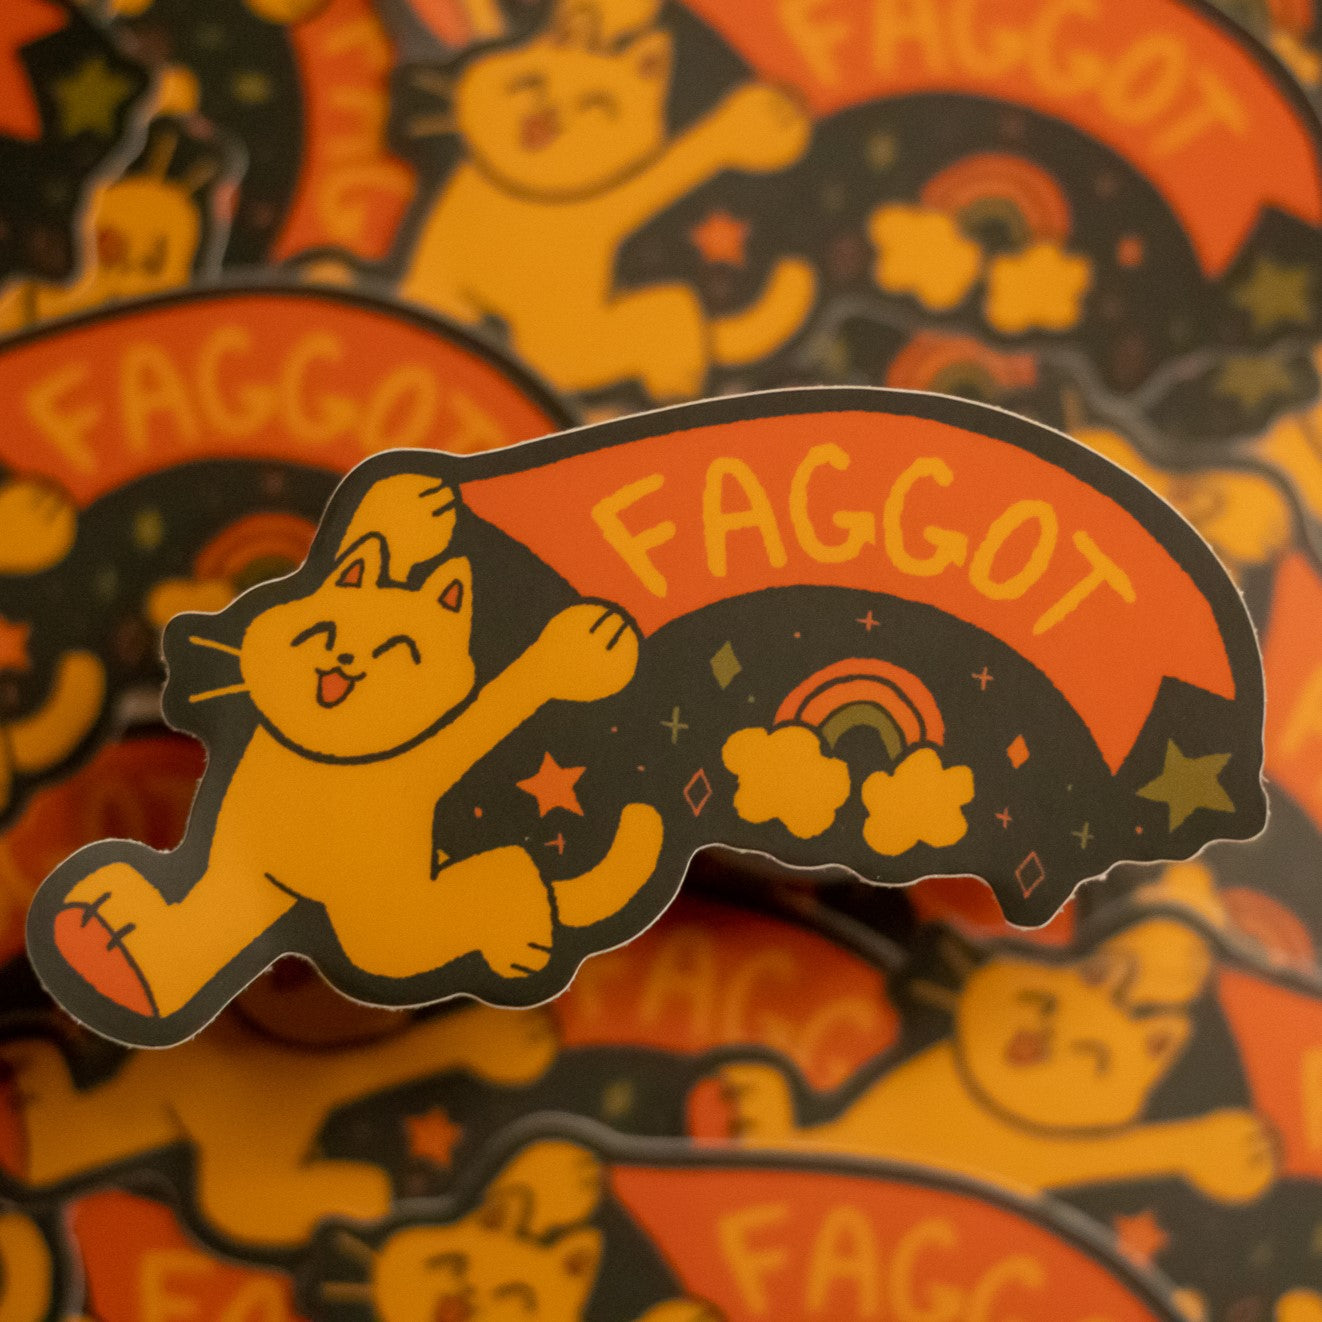 Faggot Sticker